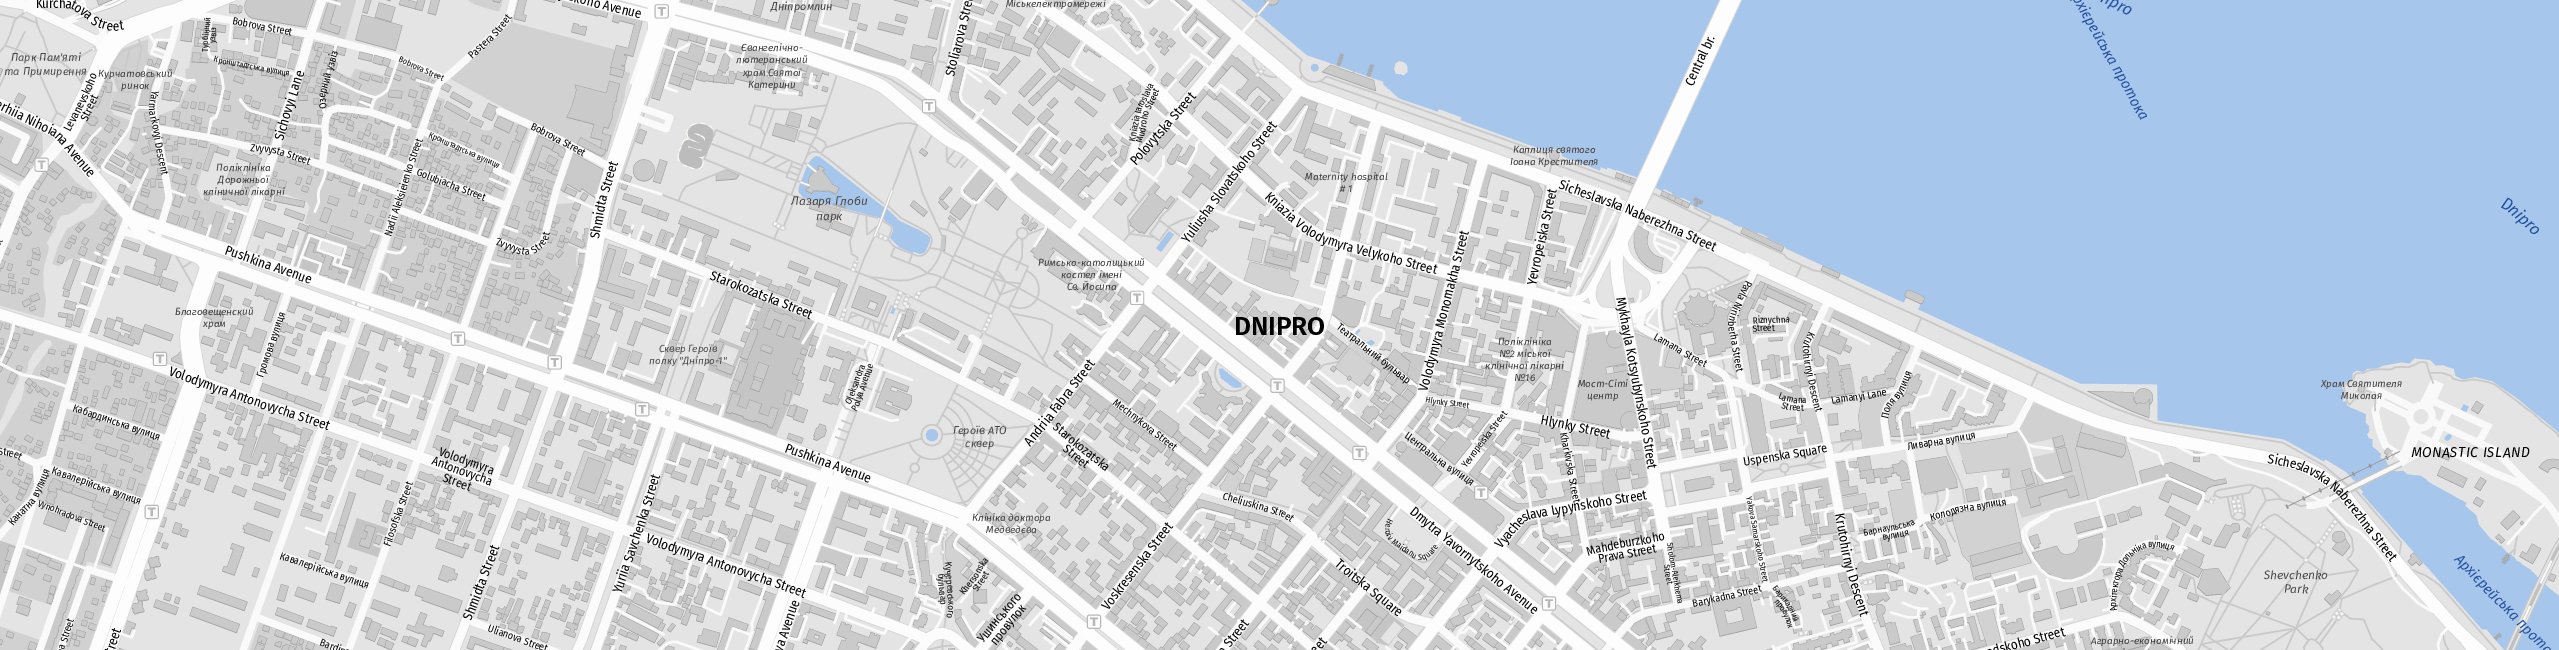 Stadtplan Dnipro zum Downloaden.